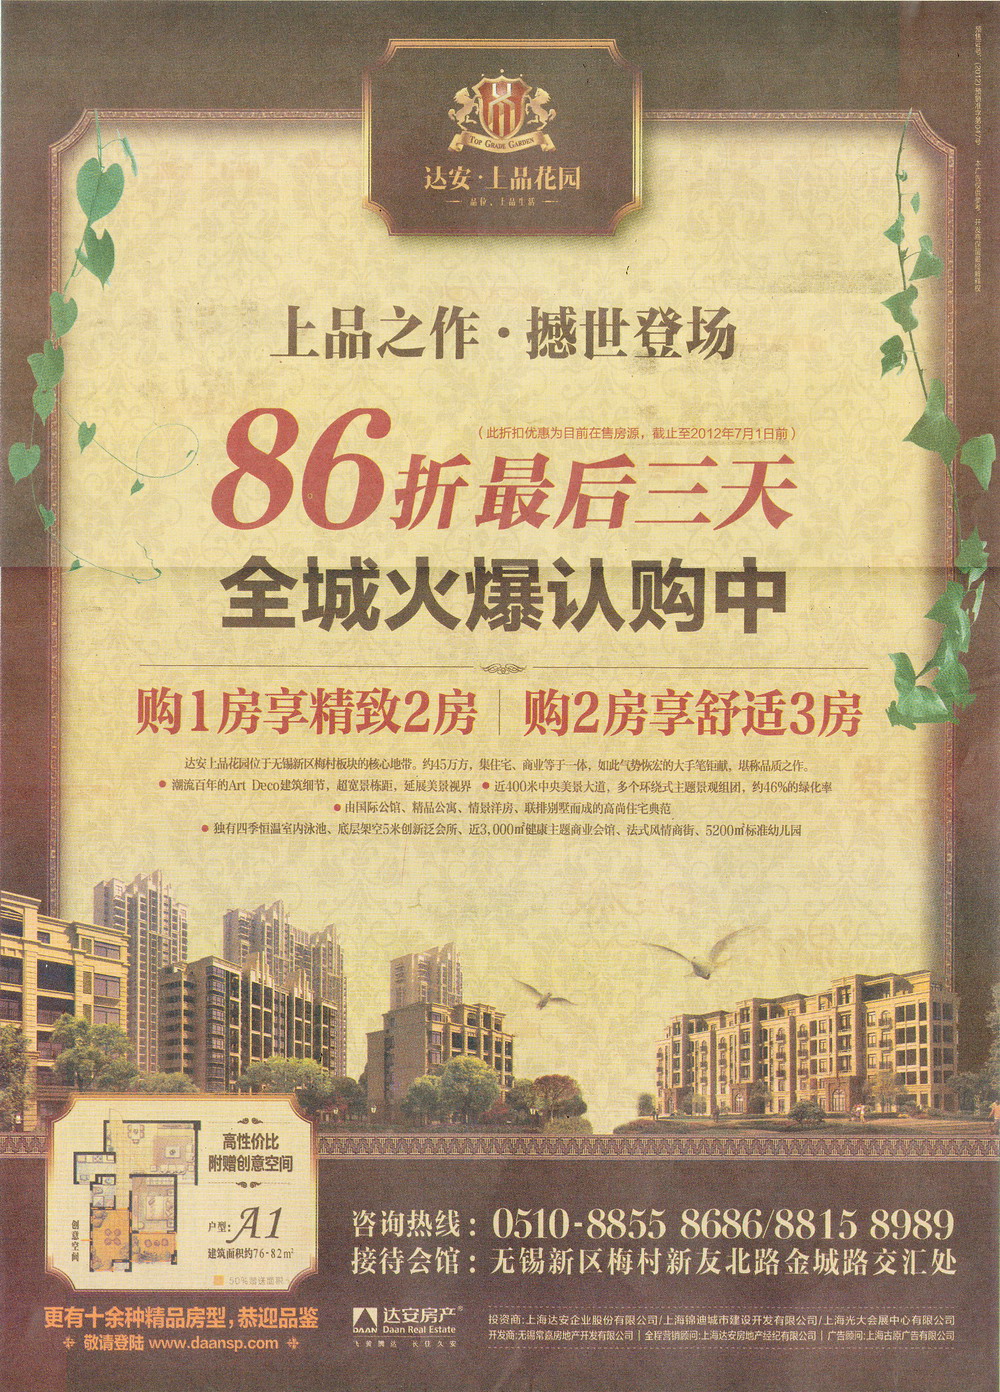 报纸广告 2012-06-29 扬子晚报 C8   